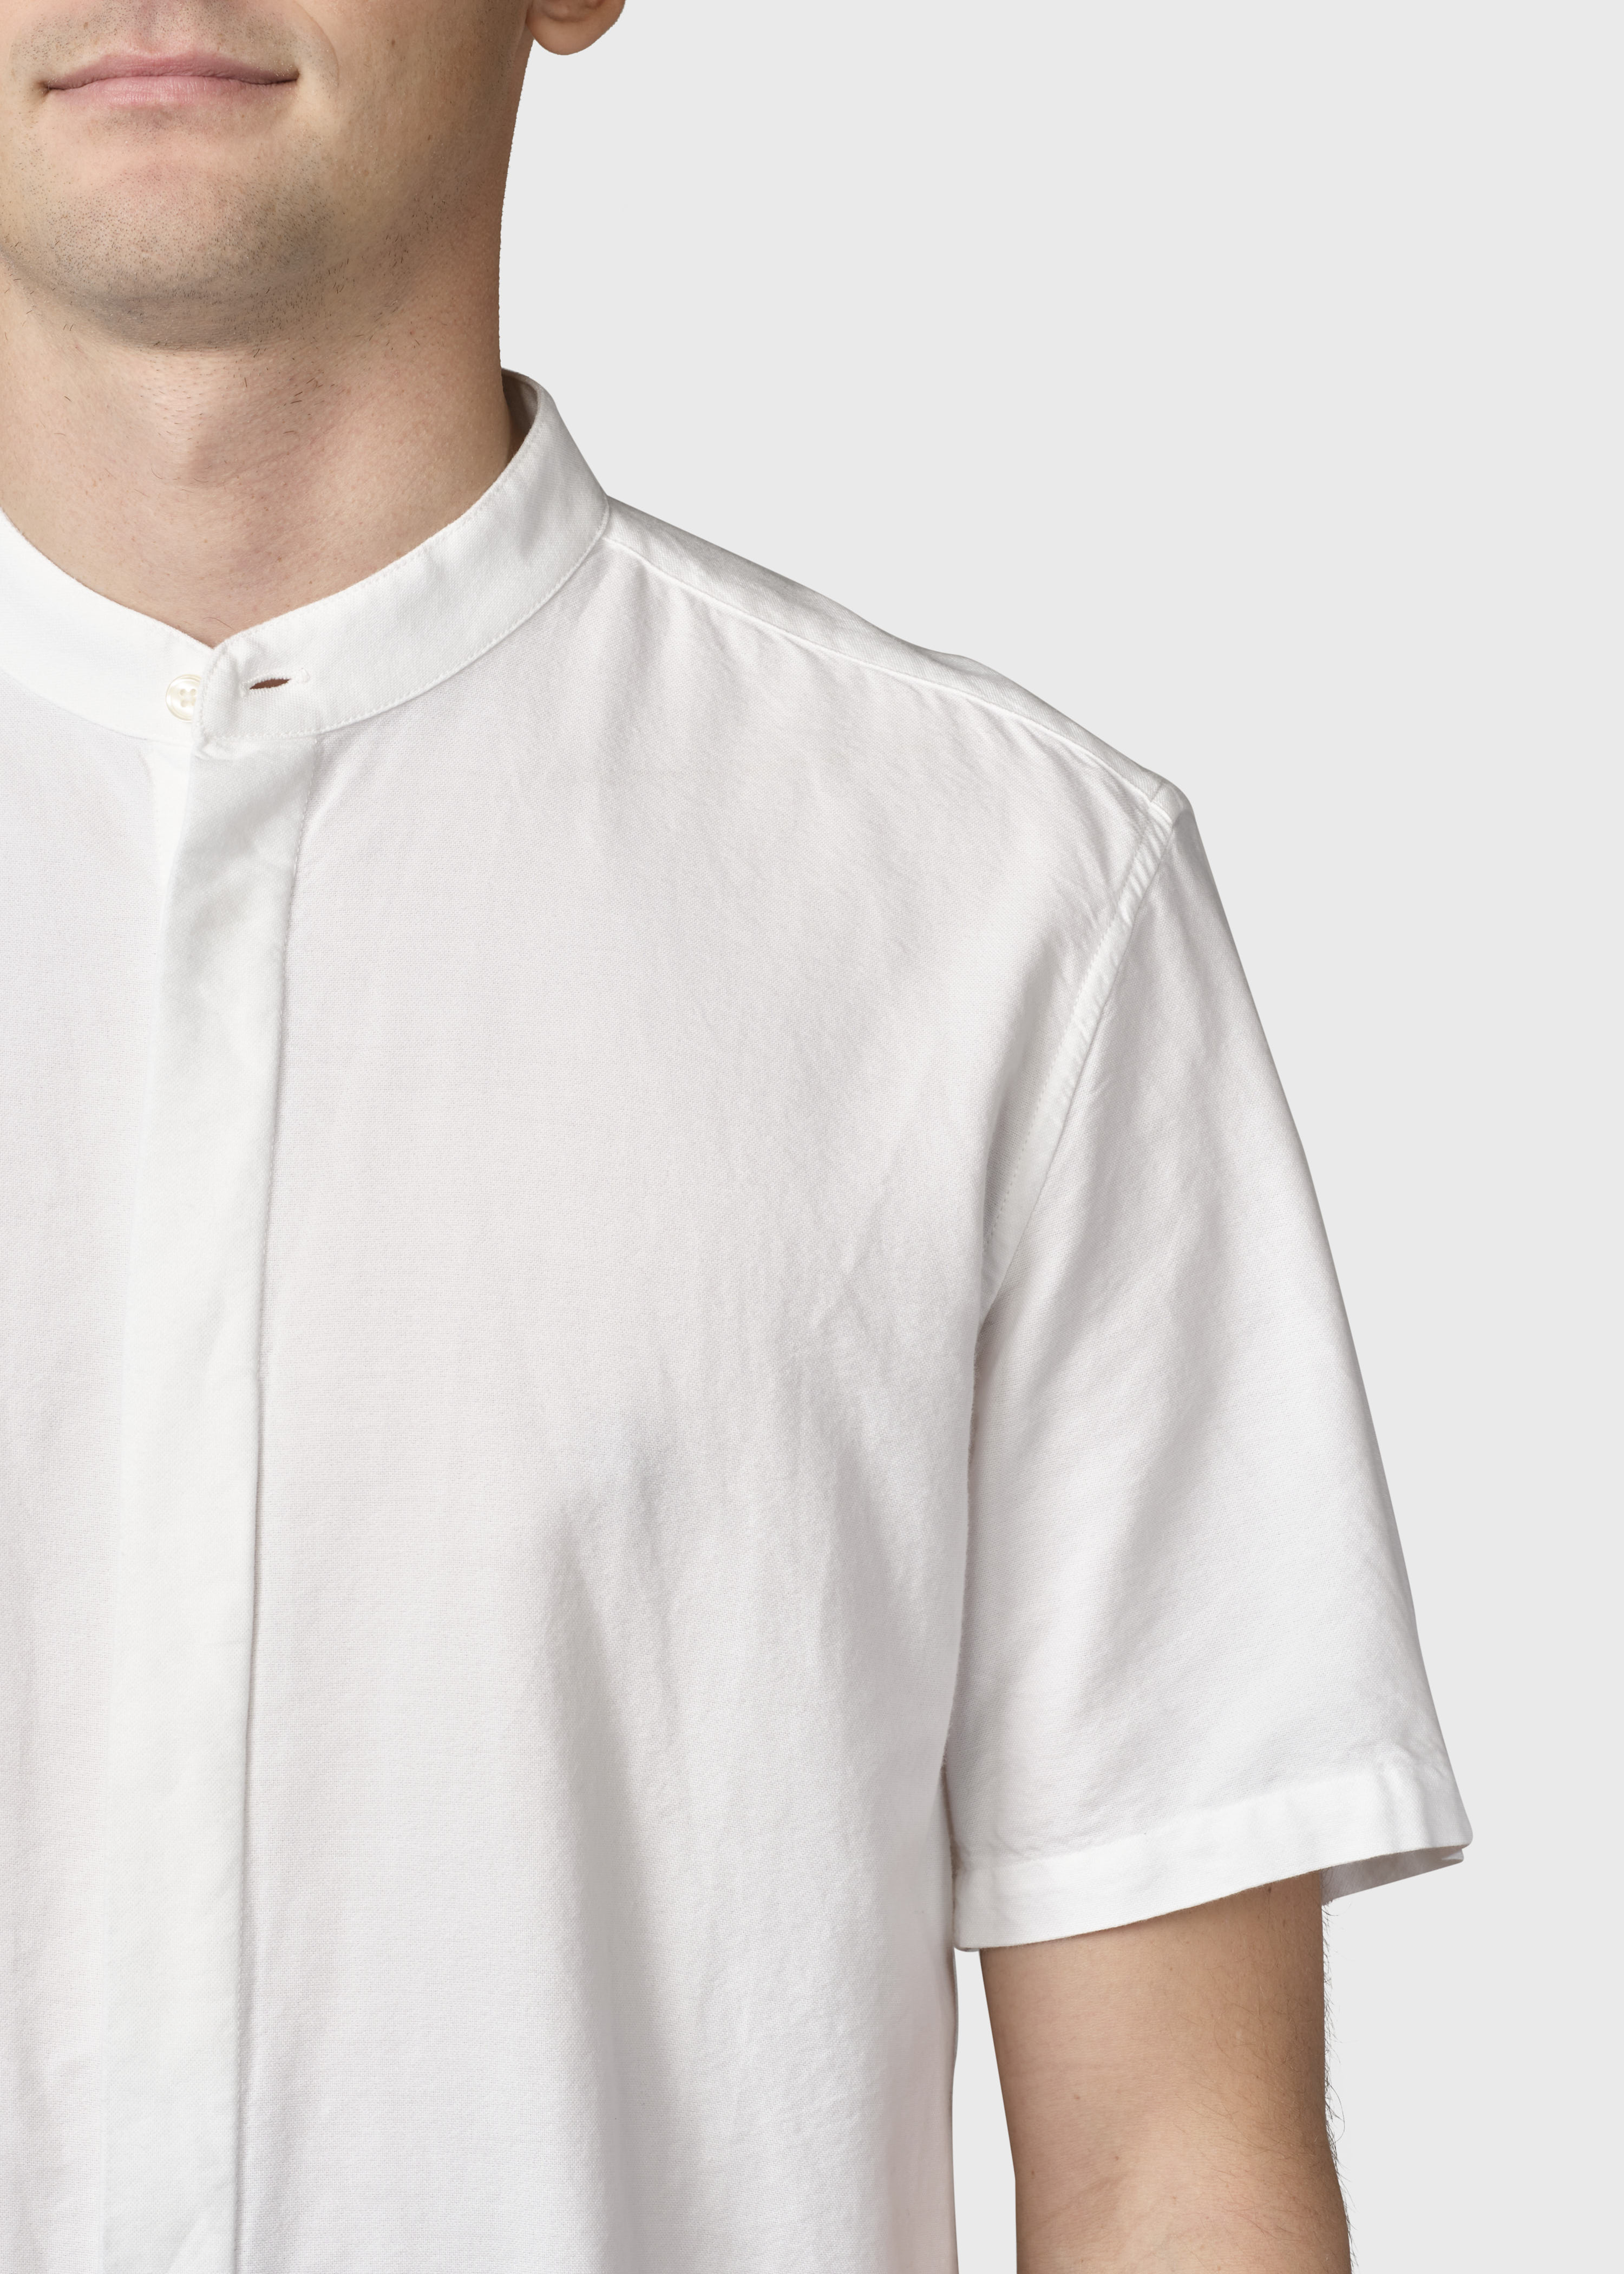 Kurzarm-Hemd Max shirt White